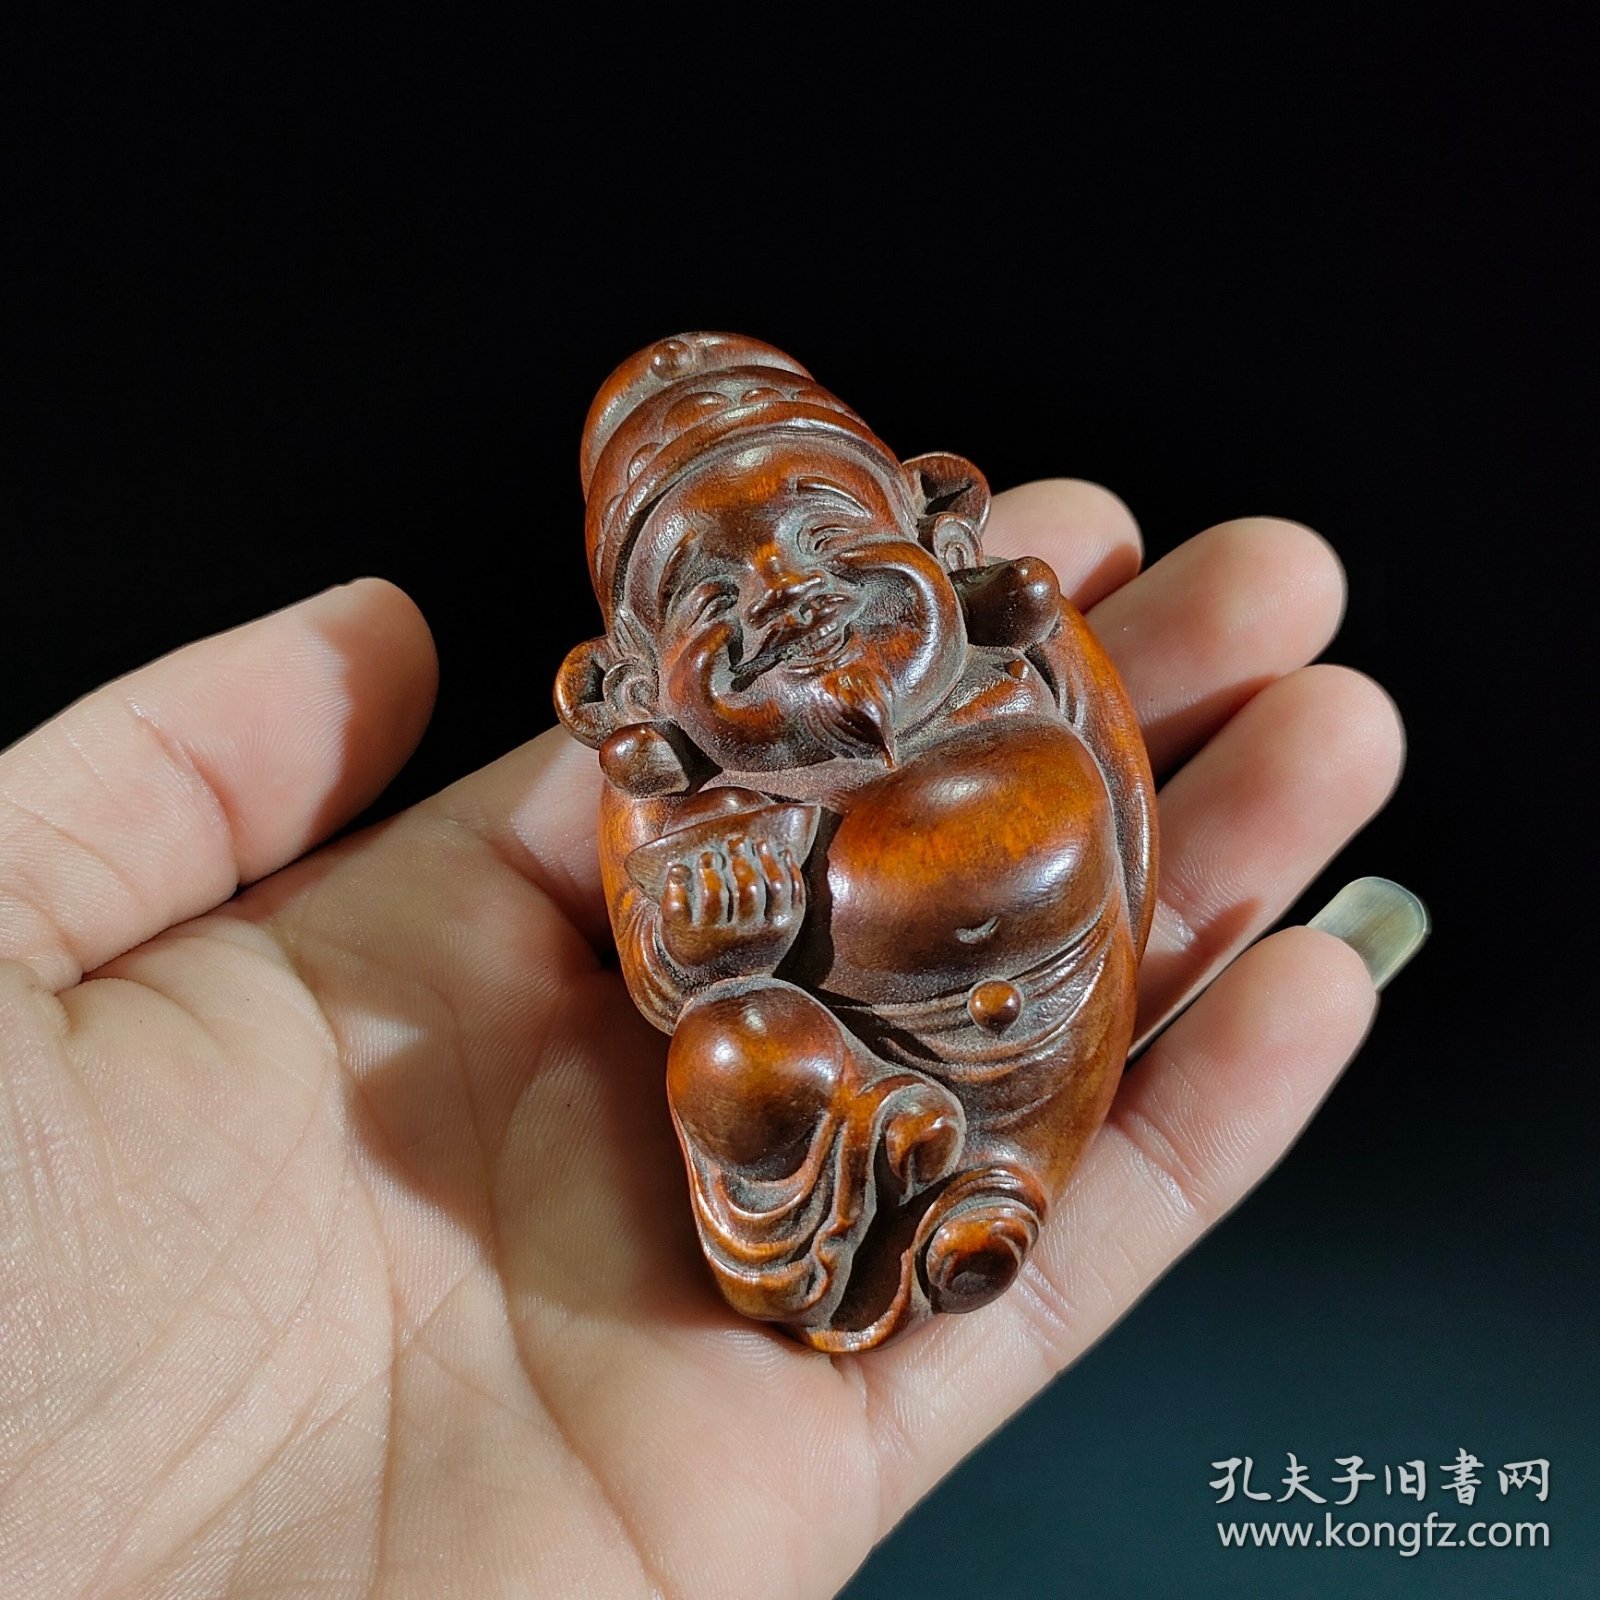 旧藏—黄杨木雕“财神挂件” 规格:高8cm宽4.5cm